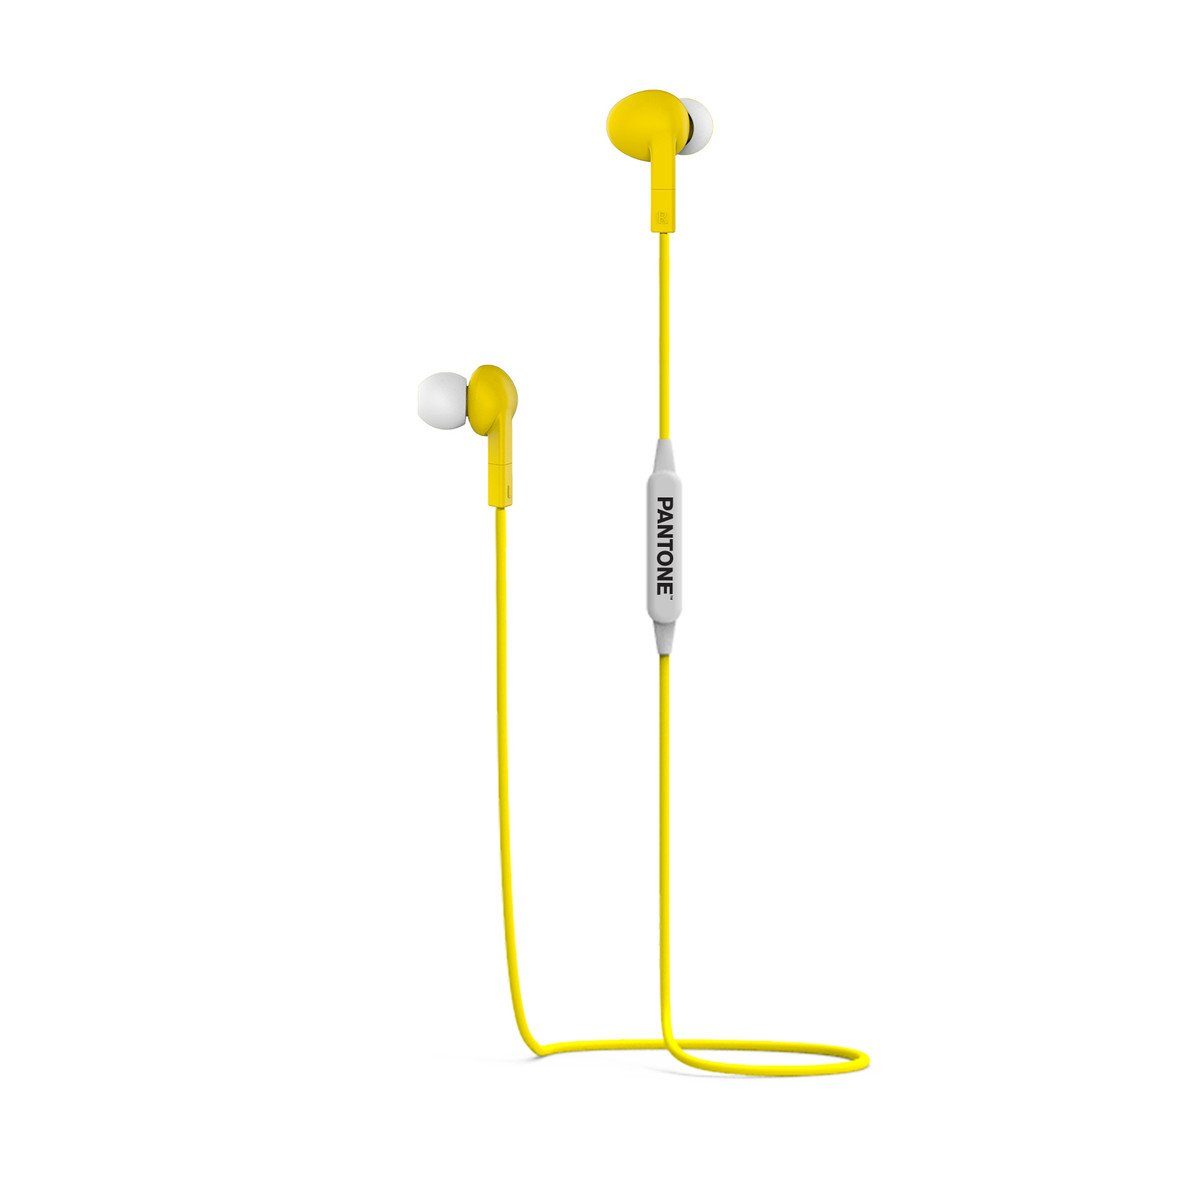 Pantone Universe PANTONE Stereo Bluetooth Kabelgebundener Ohrhörer gelb Bluetooth In-Ear-Kopfhörer